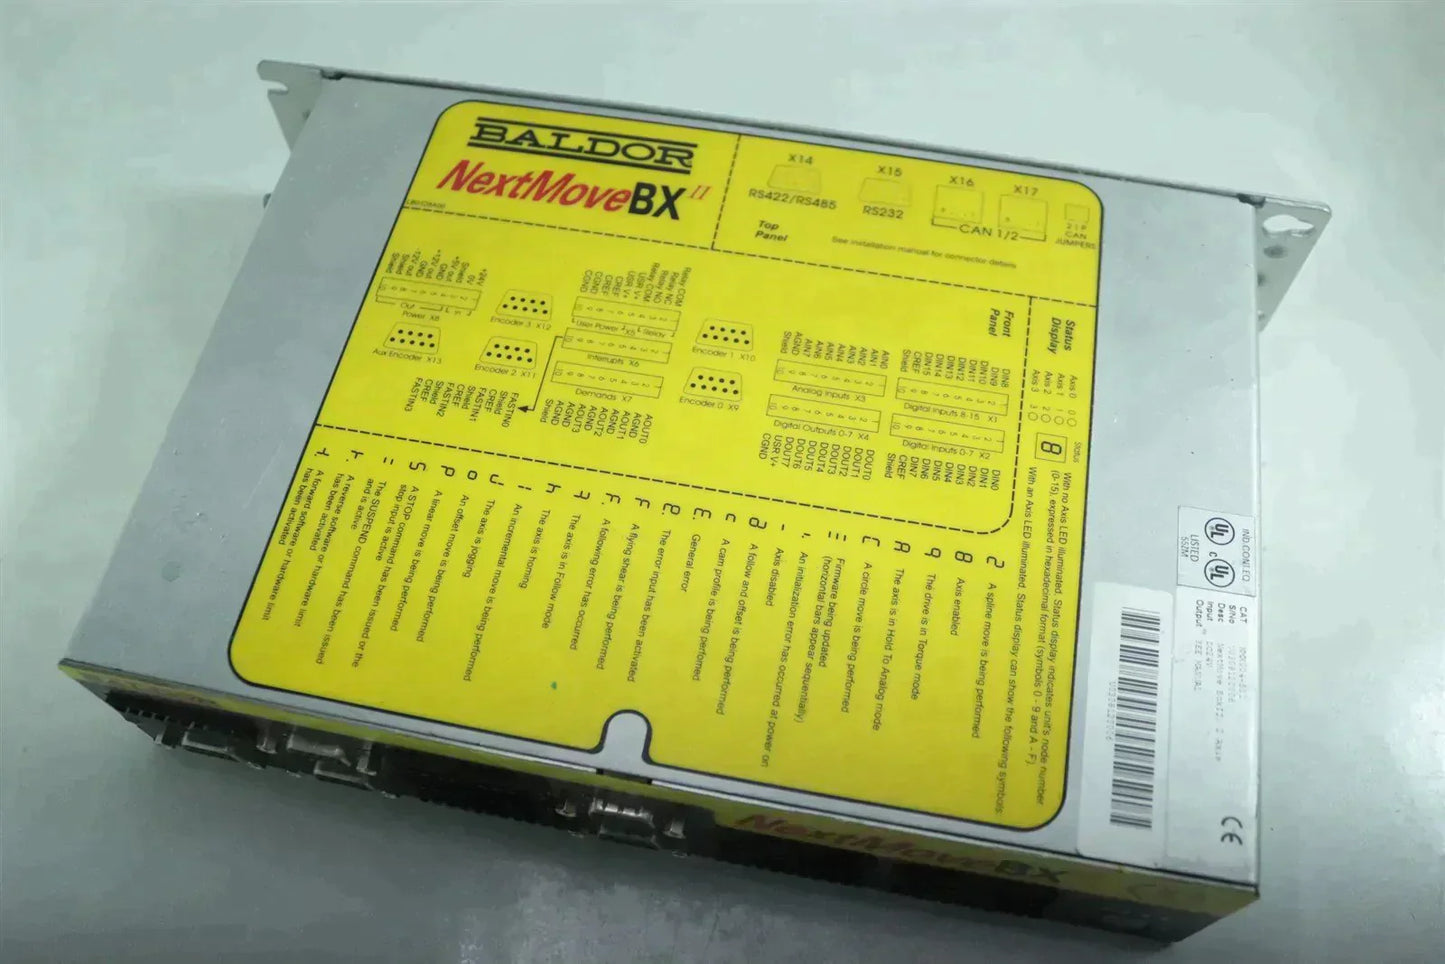 Baldor NMX004-501 2-Axis NextMove BXII Servo Motion Controller